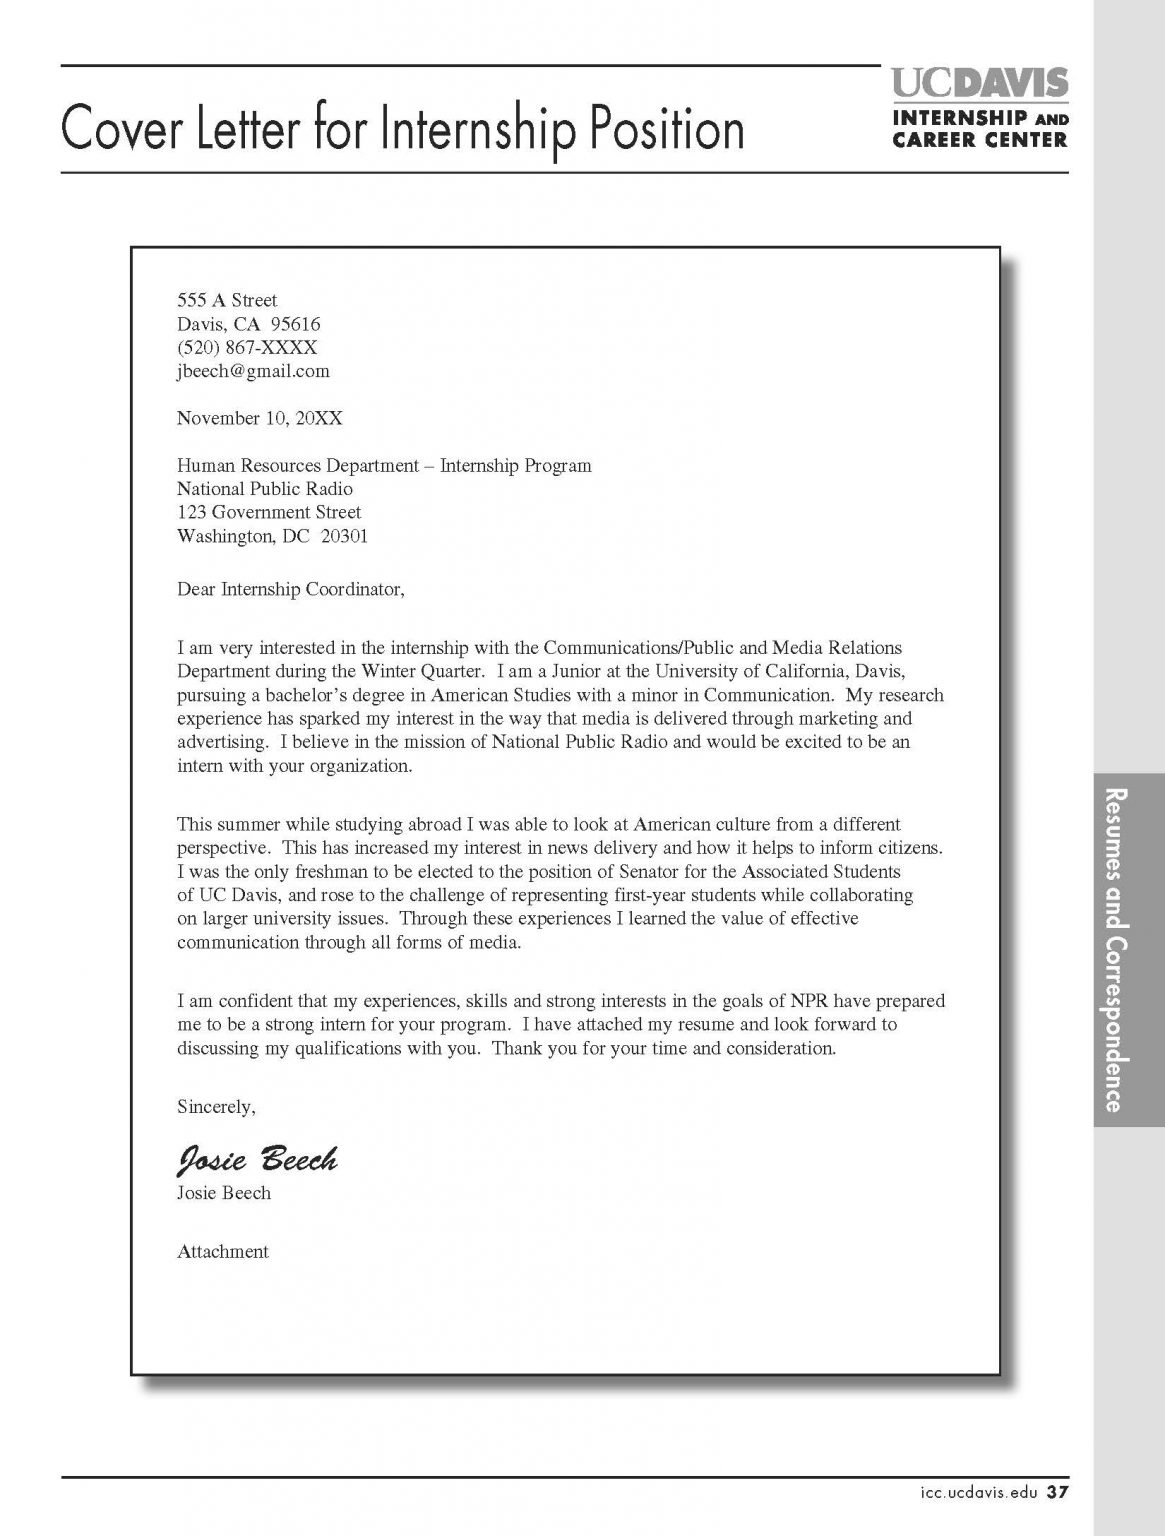 Cover Letter For Internship Sample 1165x1536 